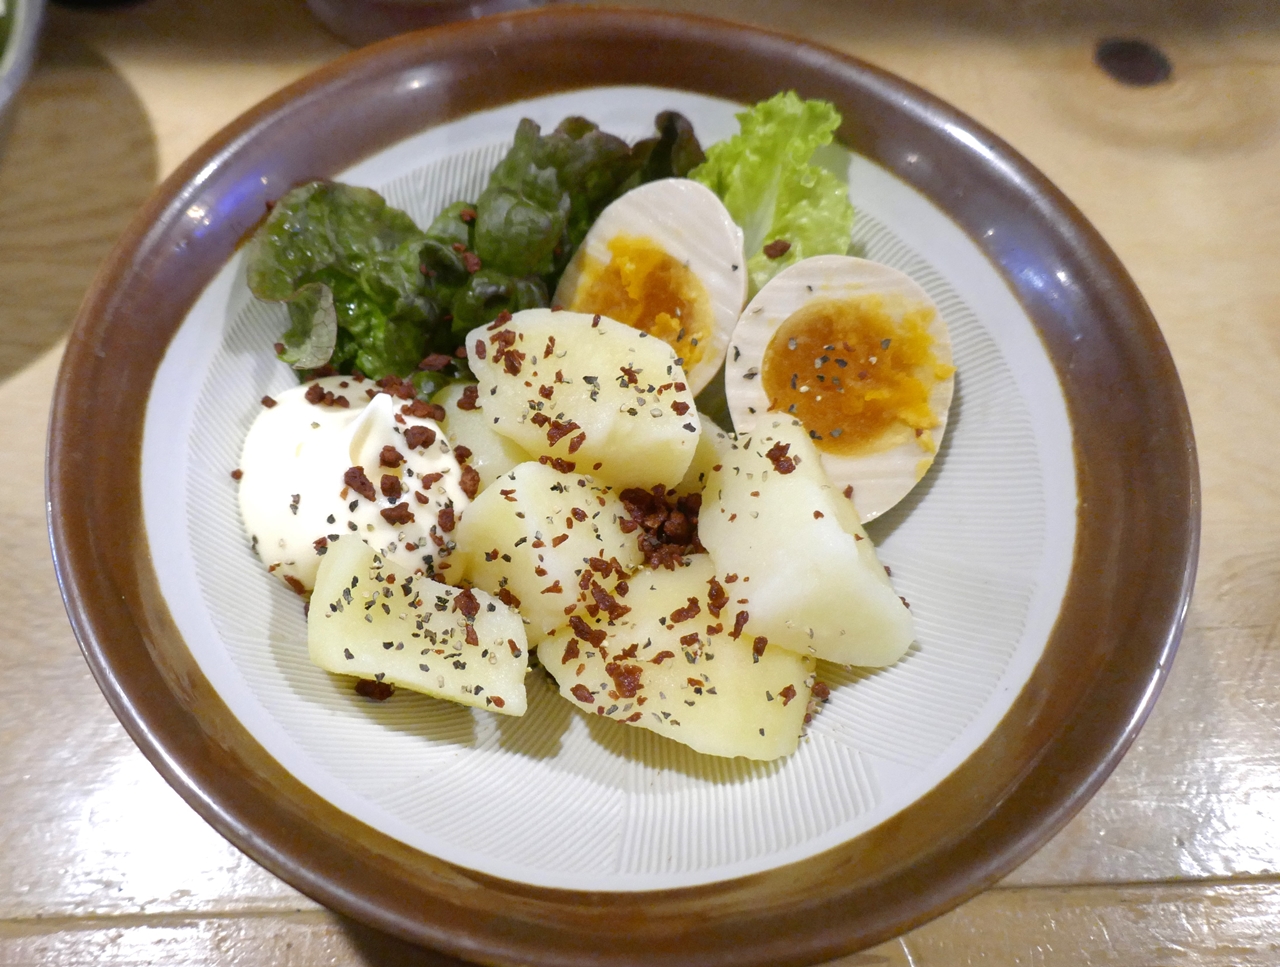 最初に頼んだ料理メニューは、「串カツ田中」式「ポテトサラダ」